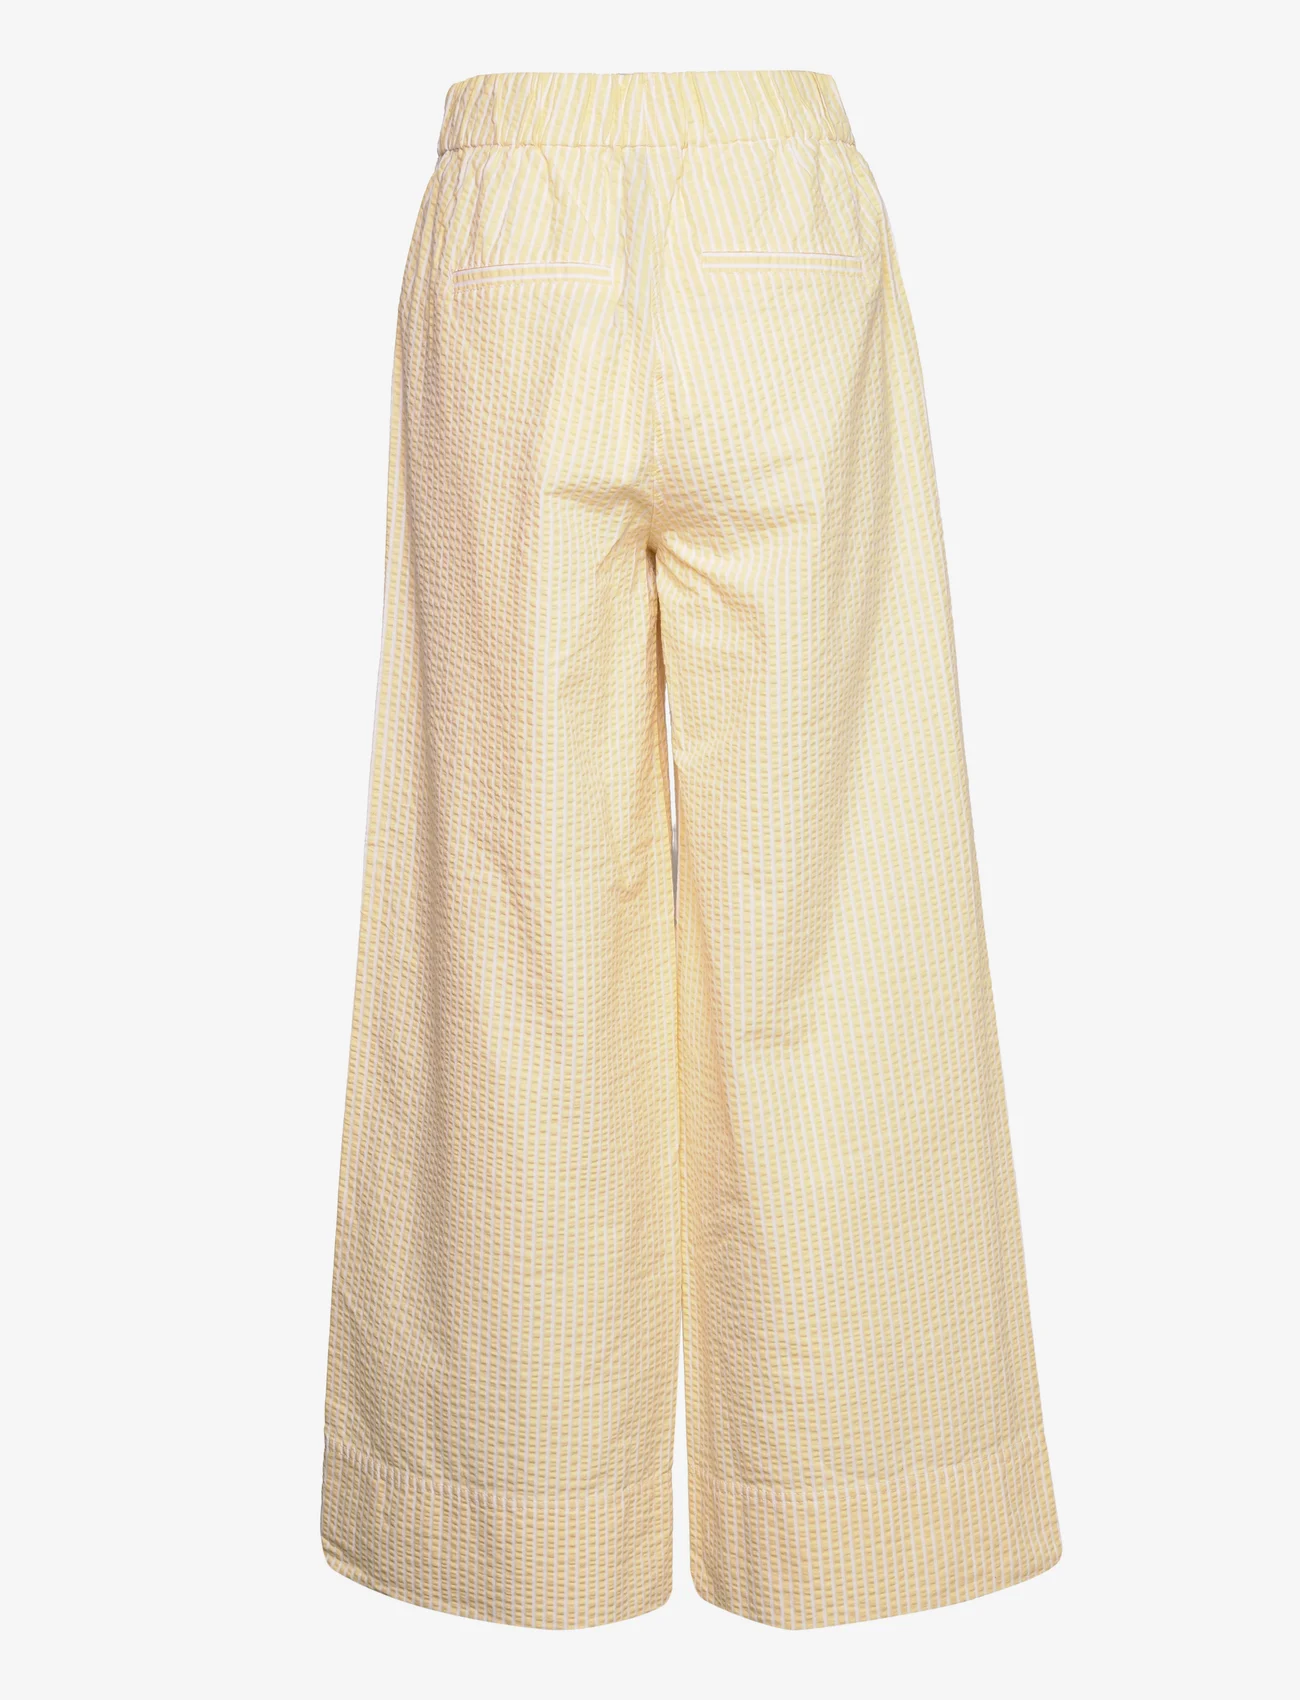 Second Female - Cairo Trousers - spodnie szerokie - golden haze - 1